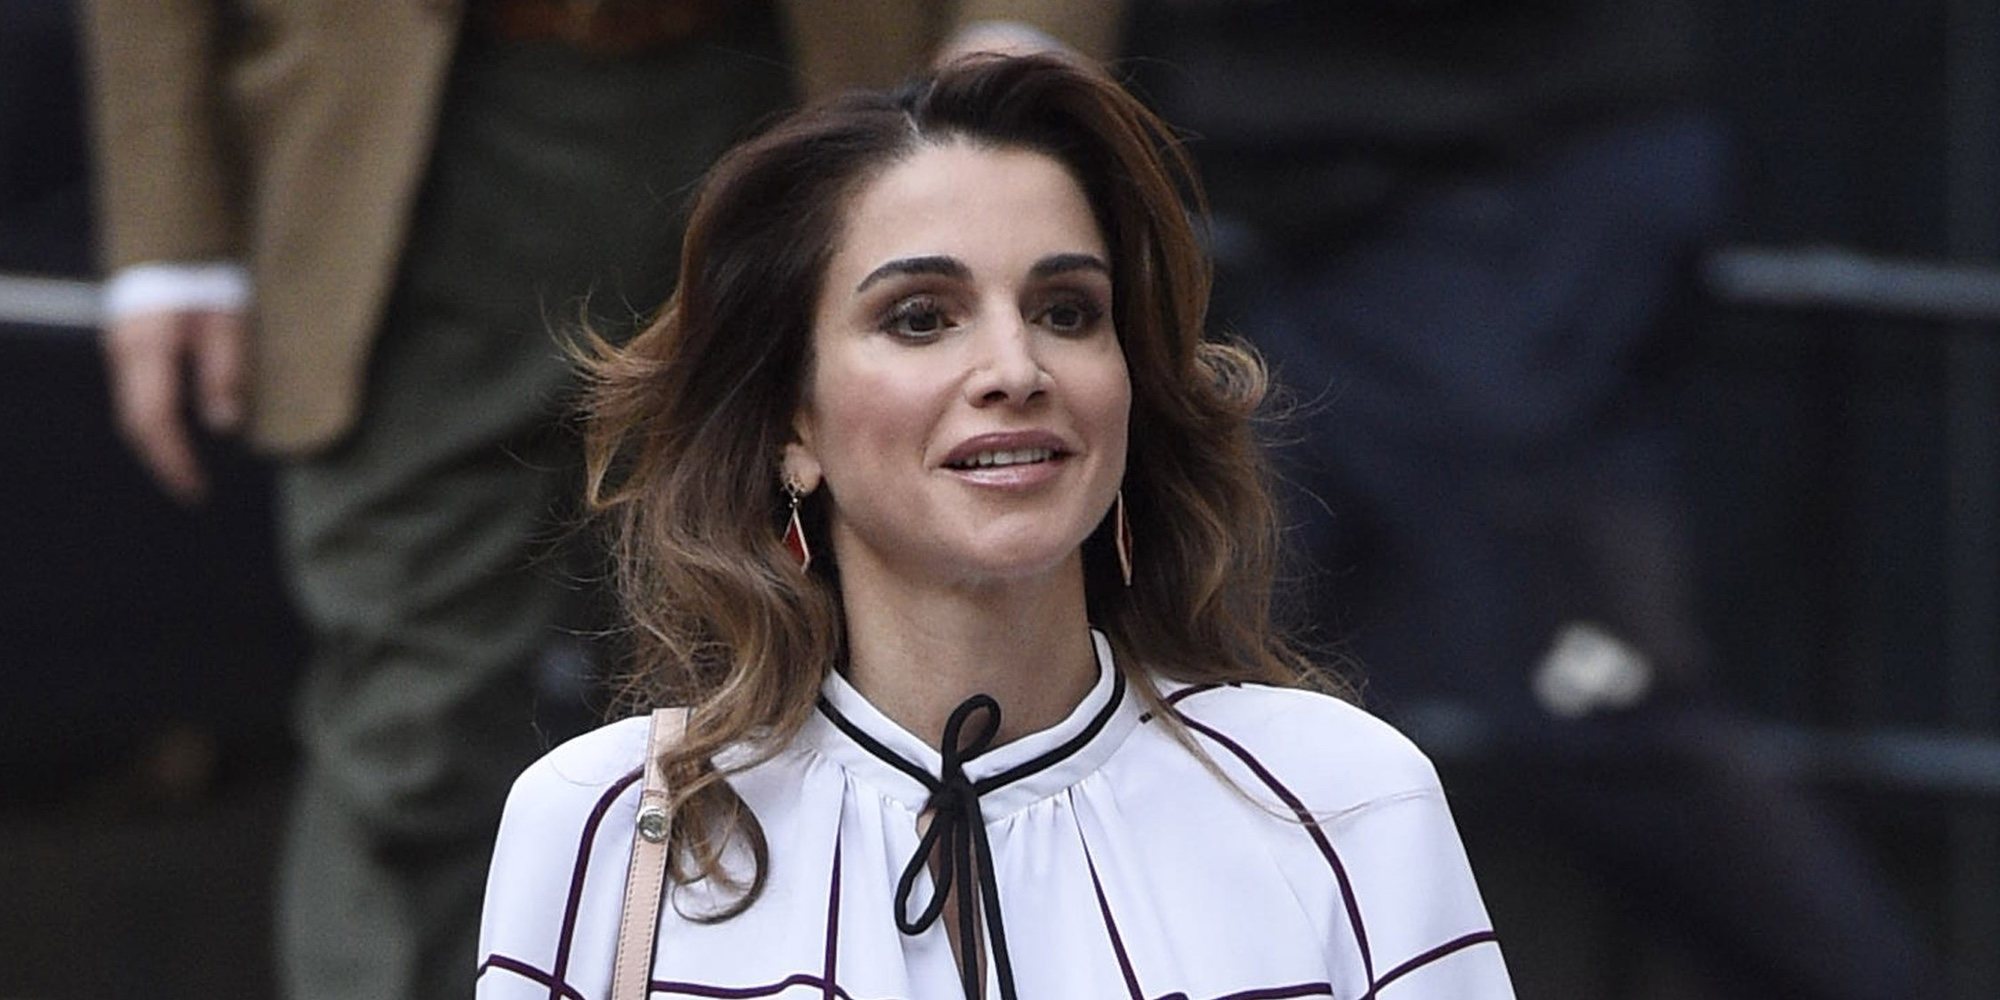 La Reina Rania de Jordania hace un inusual comunicado oficial para justificar sus gastos en ropa